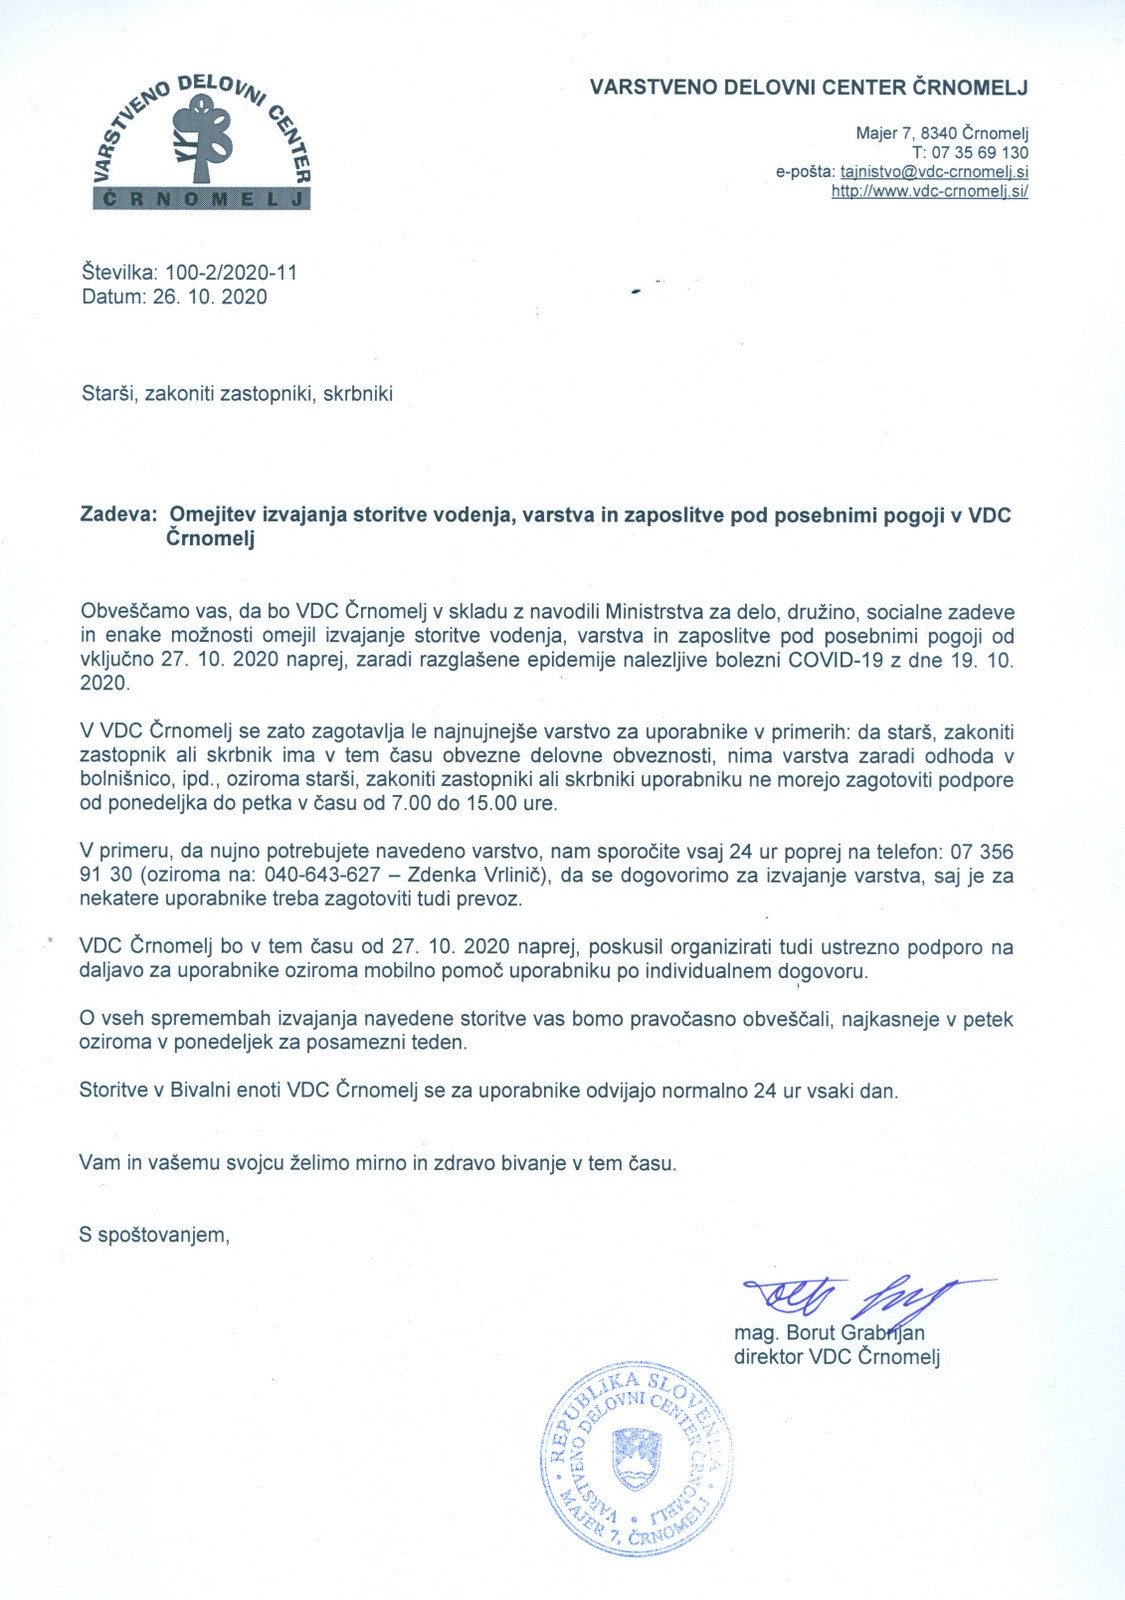 Dopis: Omejitev izvajanja storitve vodenja, varstva in zaposlitve pod posebnimi pogoji v VDC Črnomelj 26.10.2020